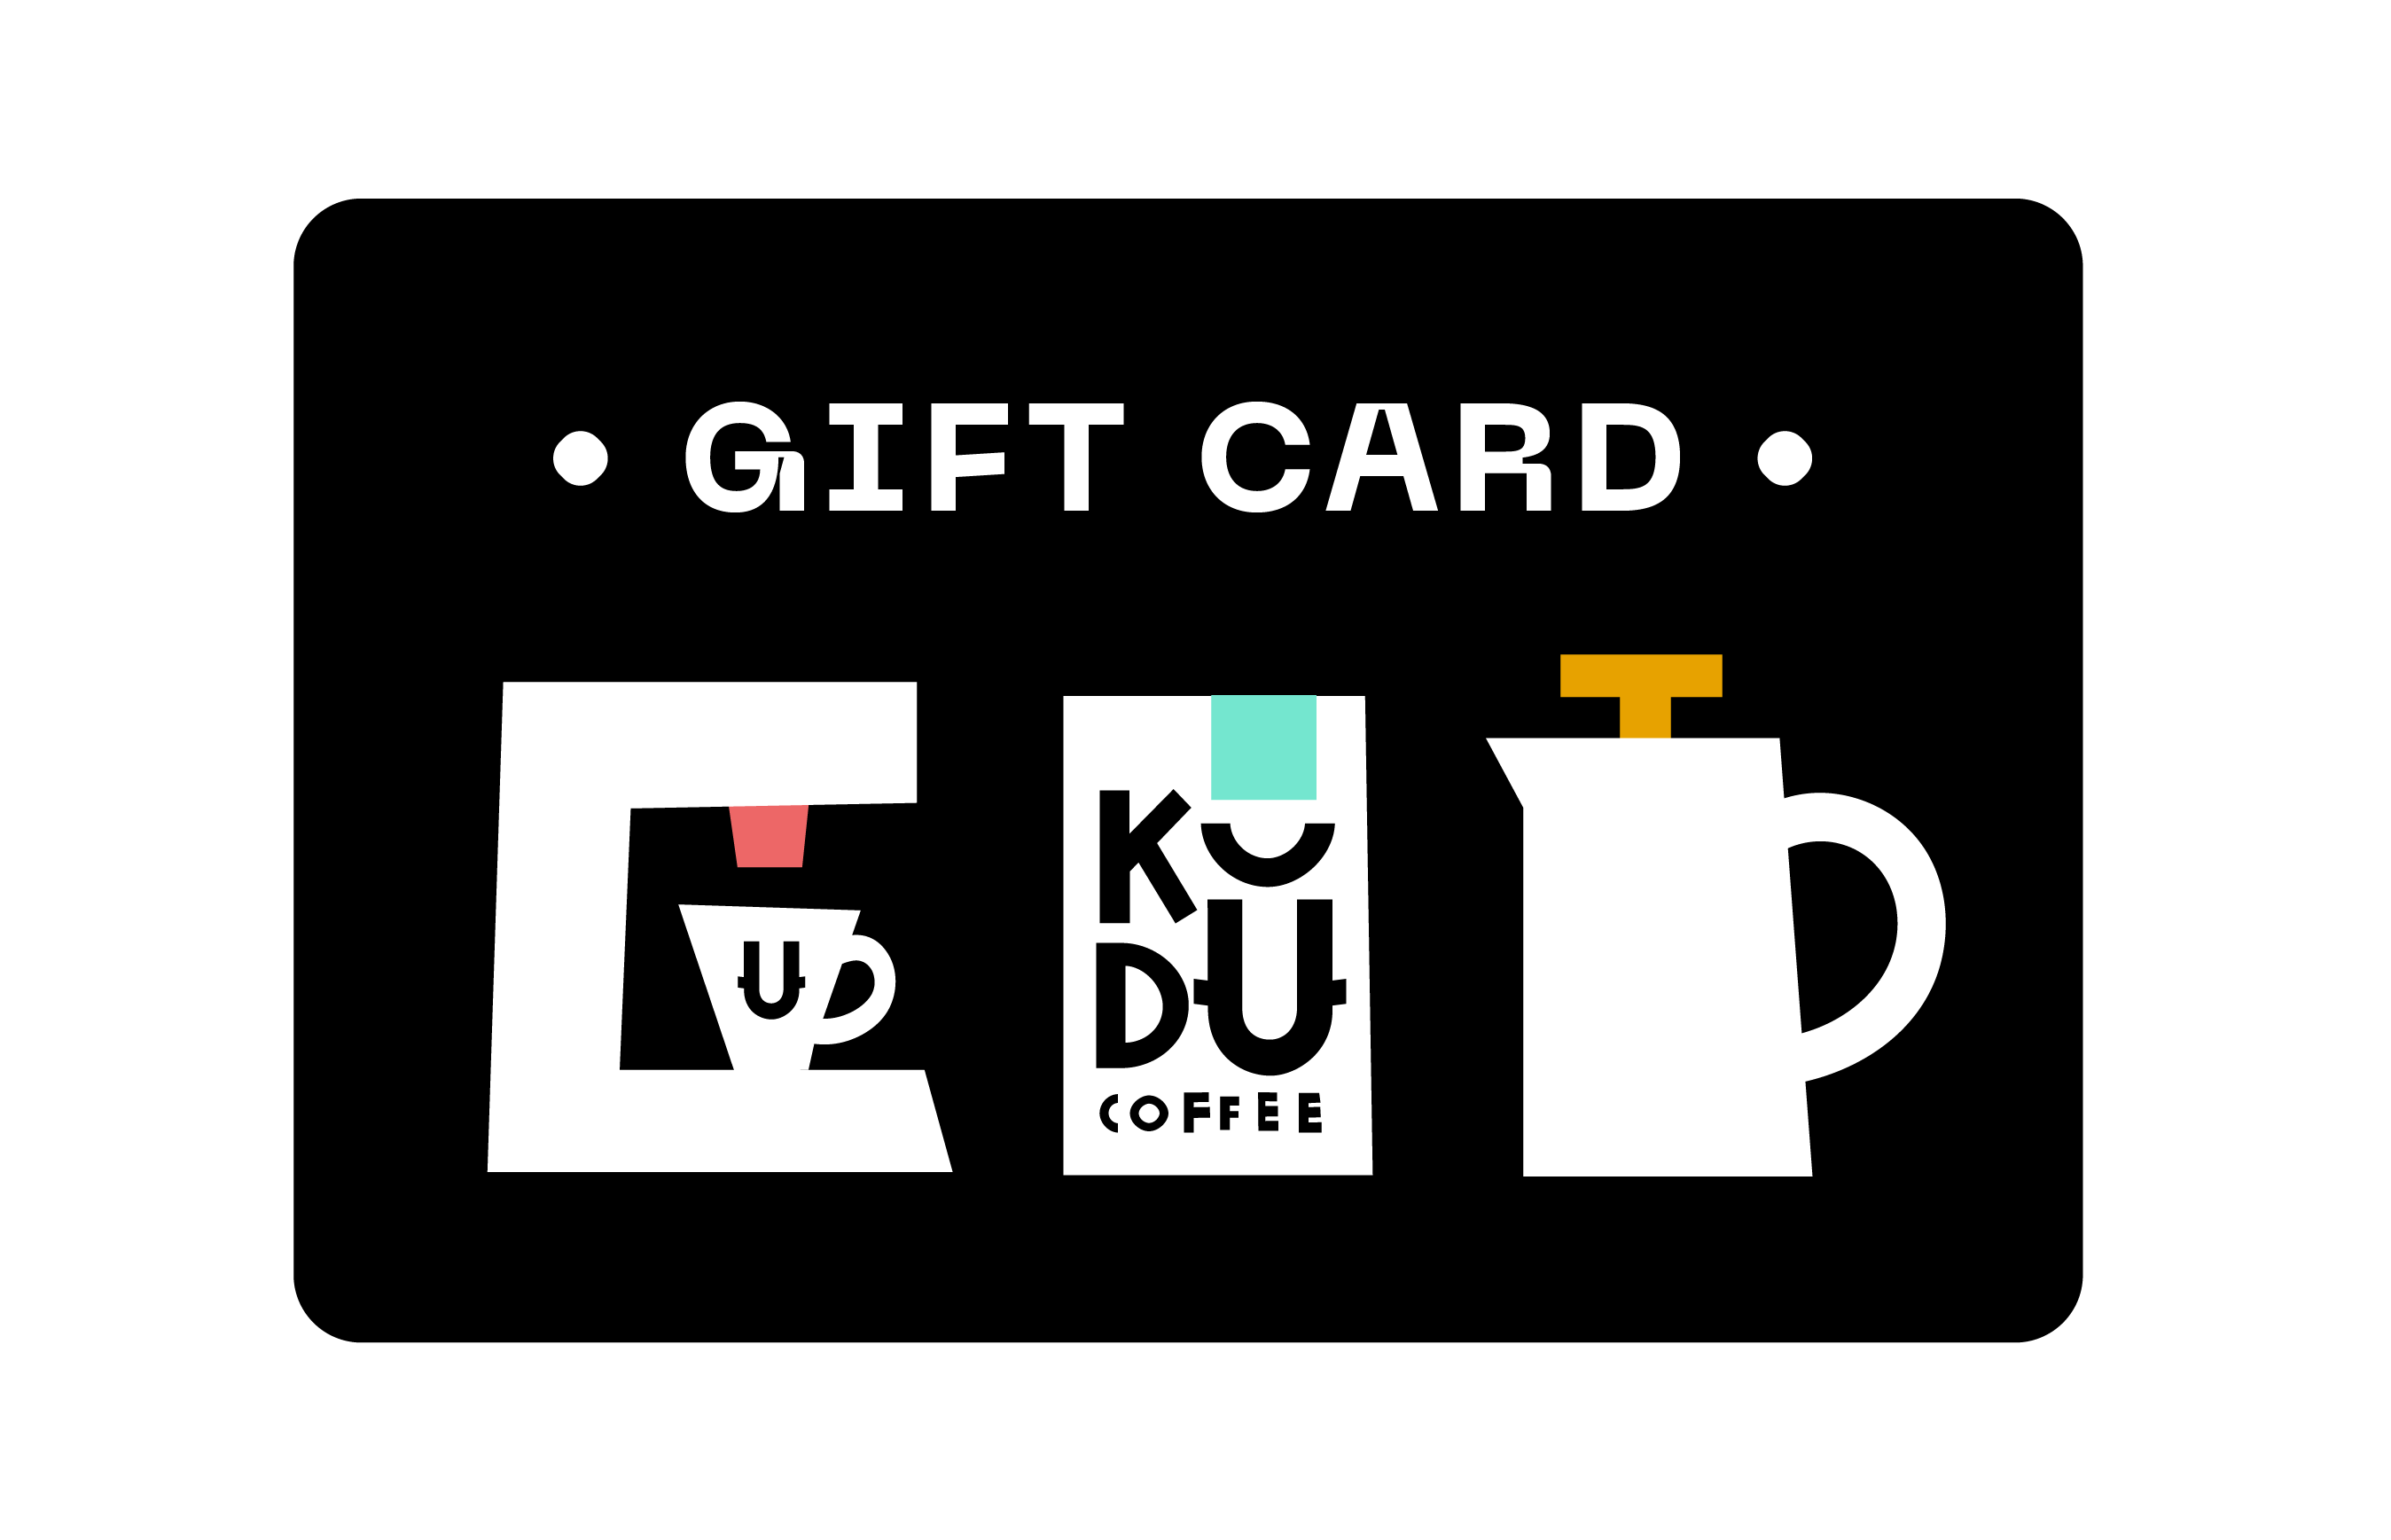 Kudu Gift Card